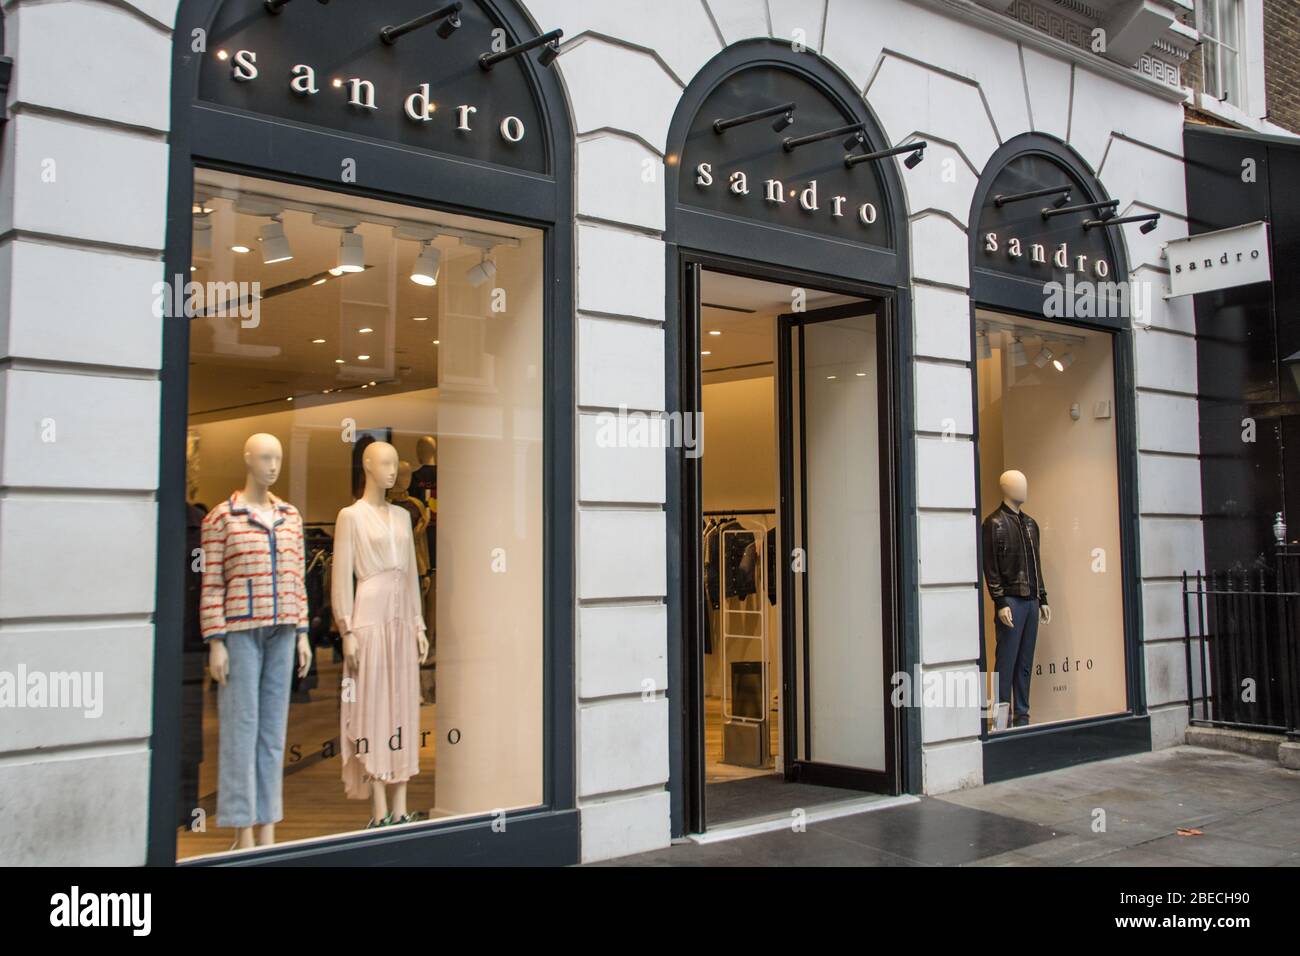 LONDRA - MARZO 2019: Esterno del negozio di moda Sandro a Covent Garden, un marchio di moda francese Foto Stock